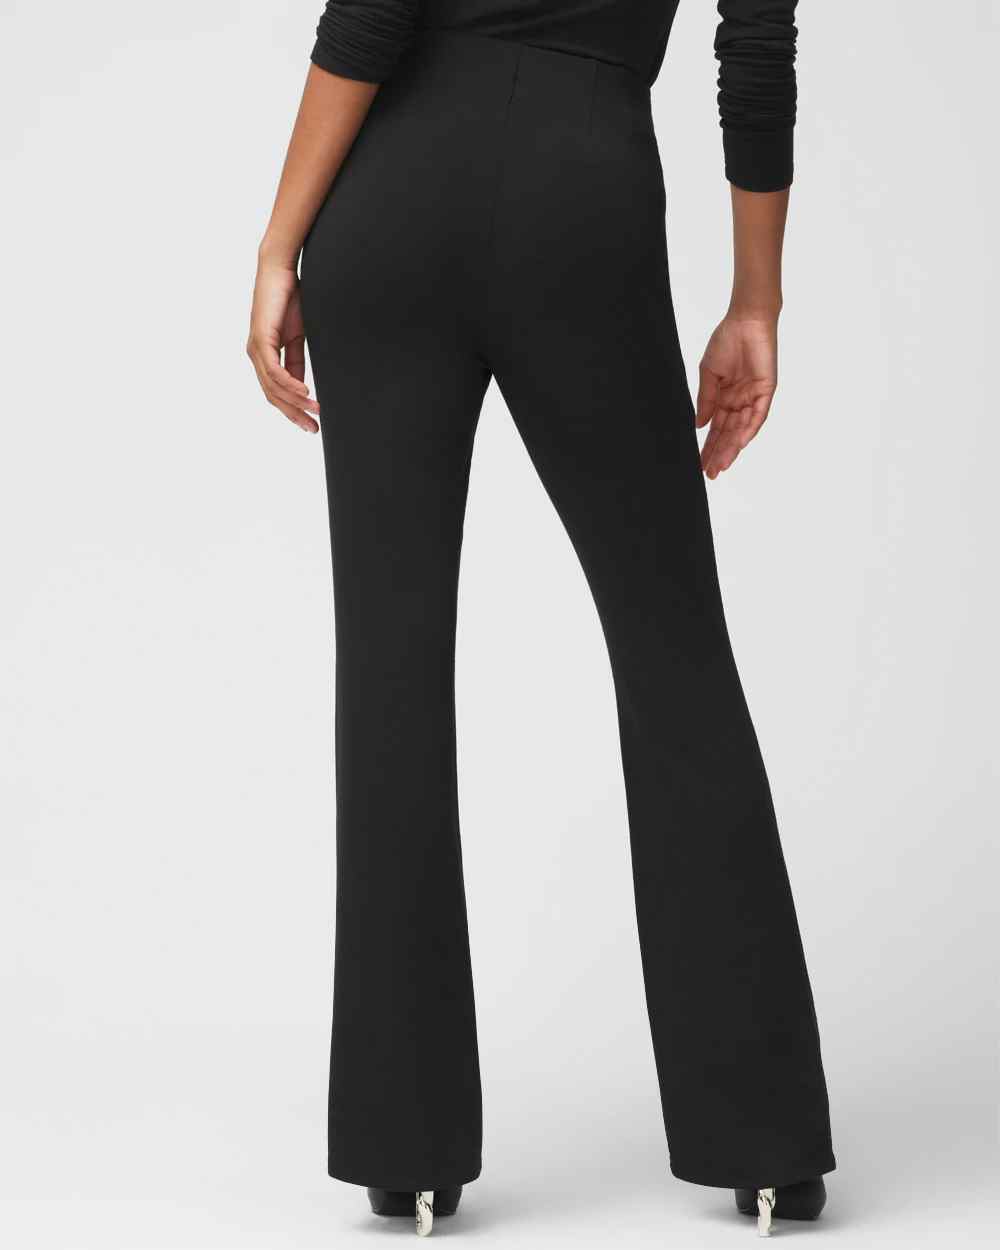 Shop New Arrivals on Women's Pants | White House Black Market